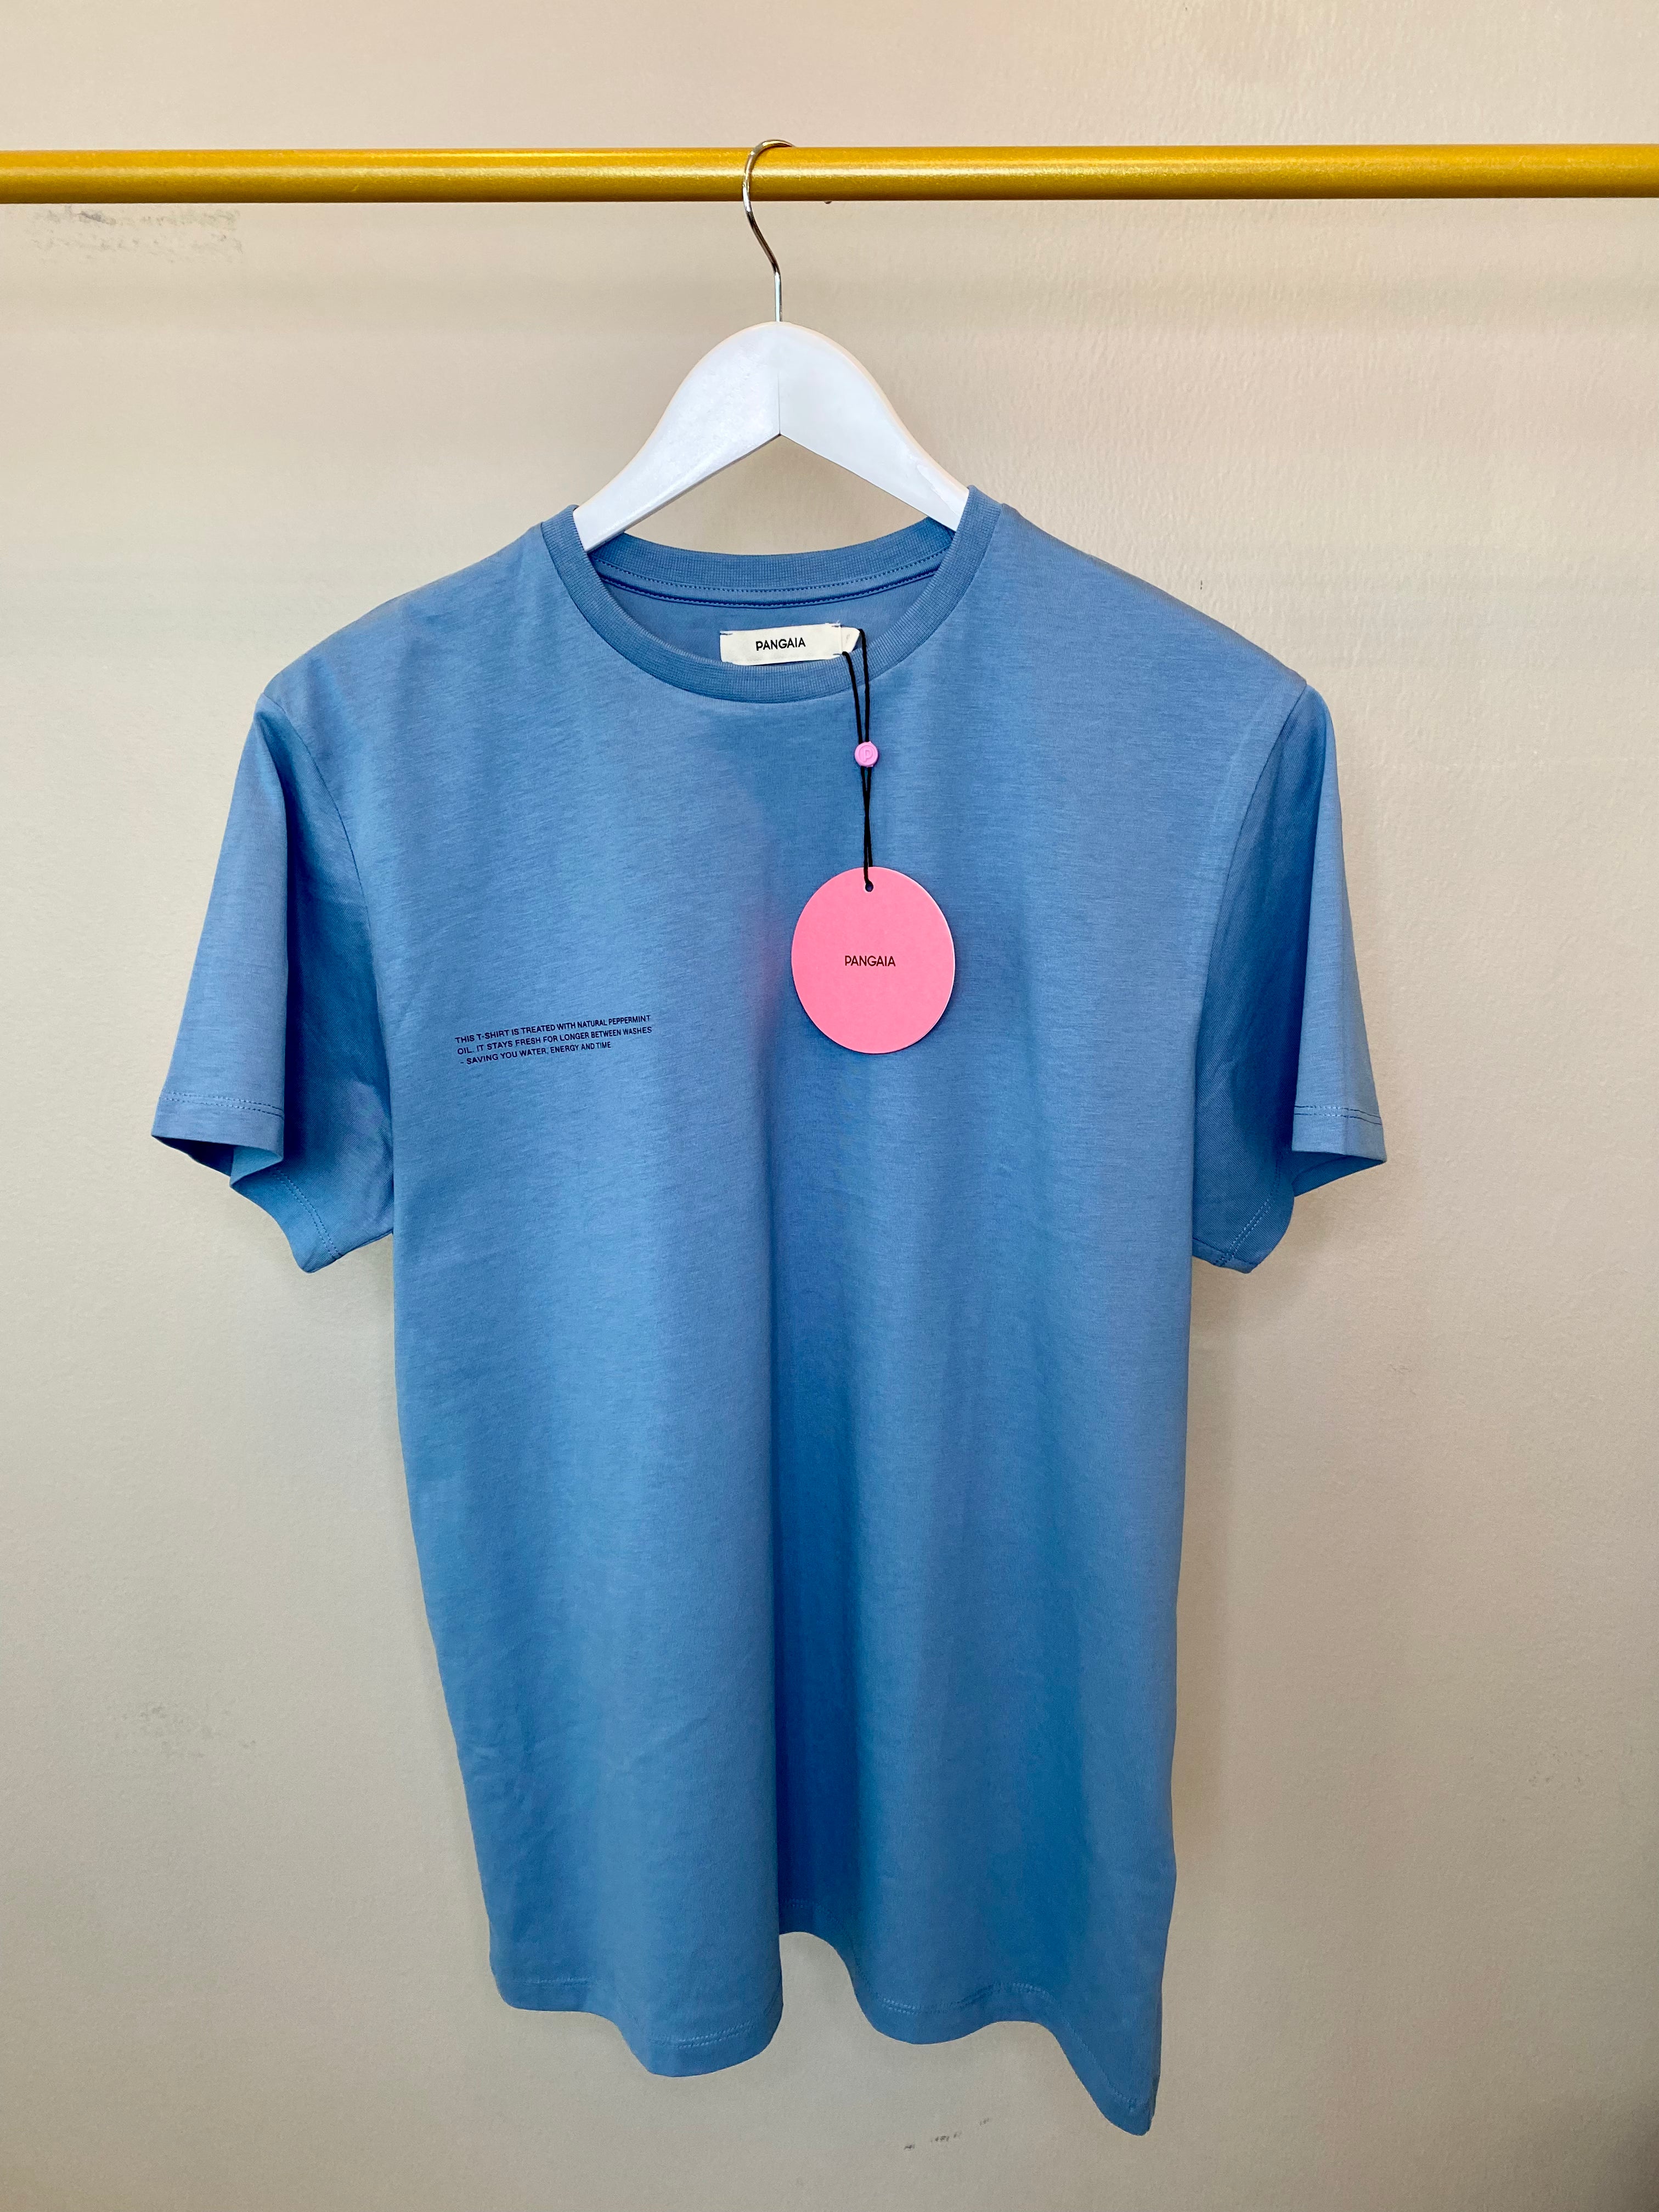 Greyish blue plain short sleeve shirt - PANGAIA